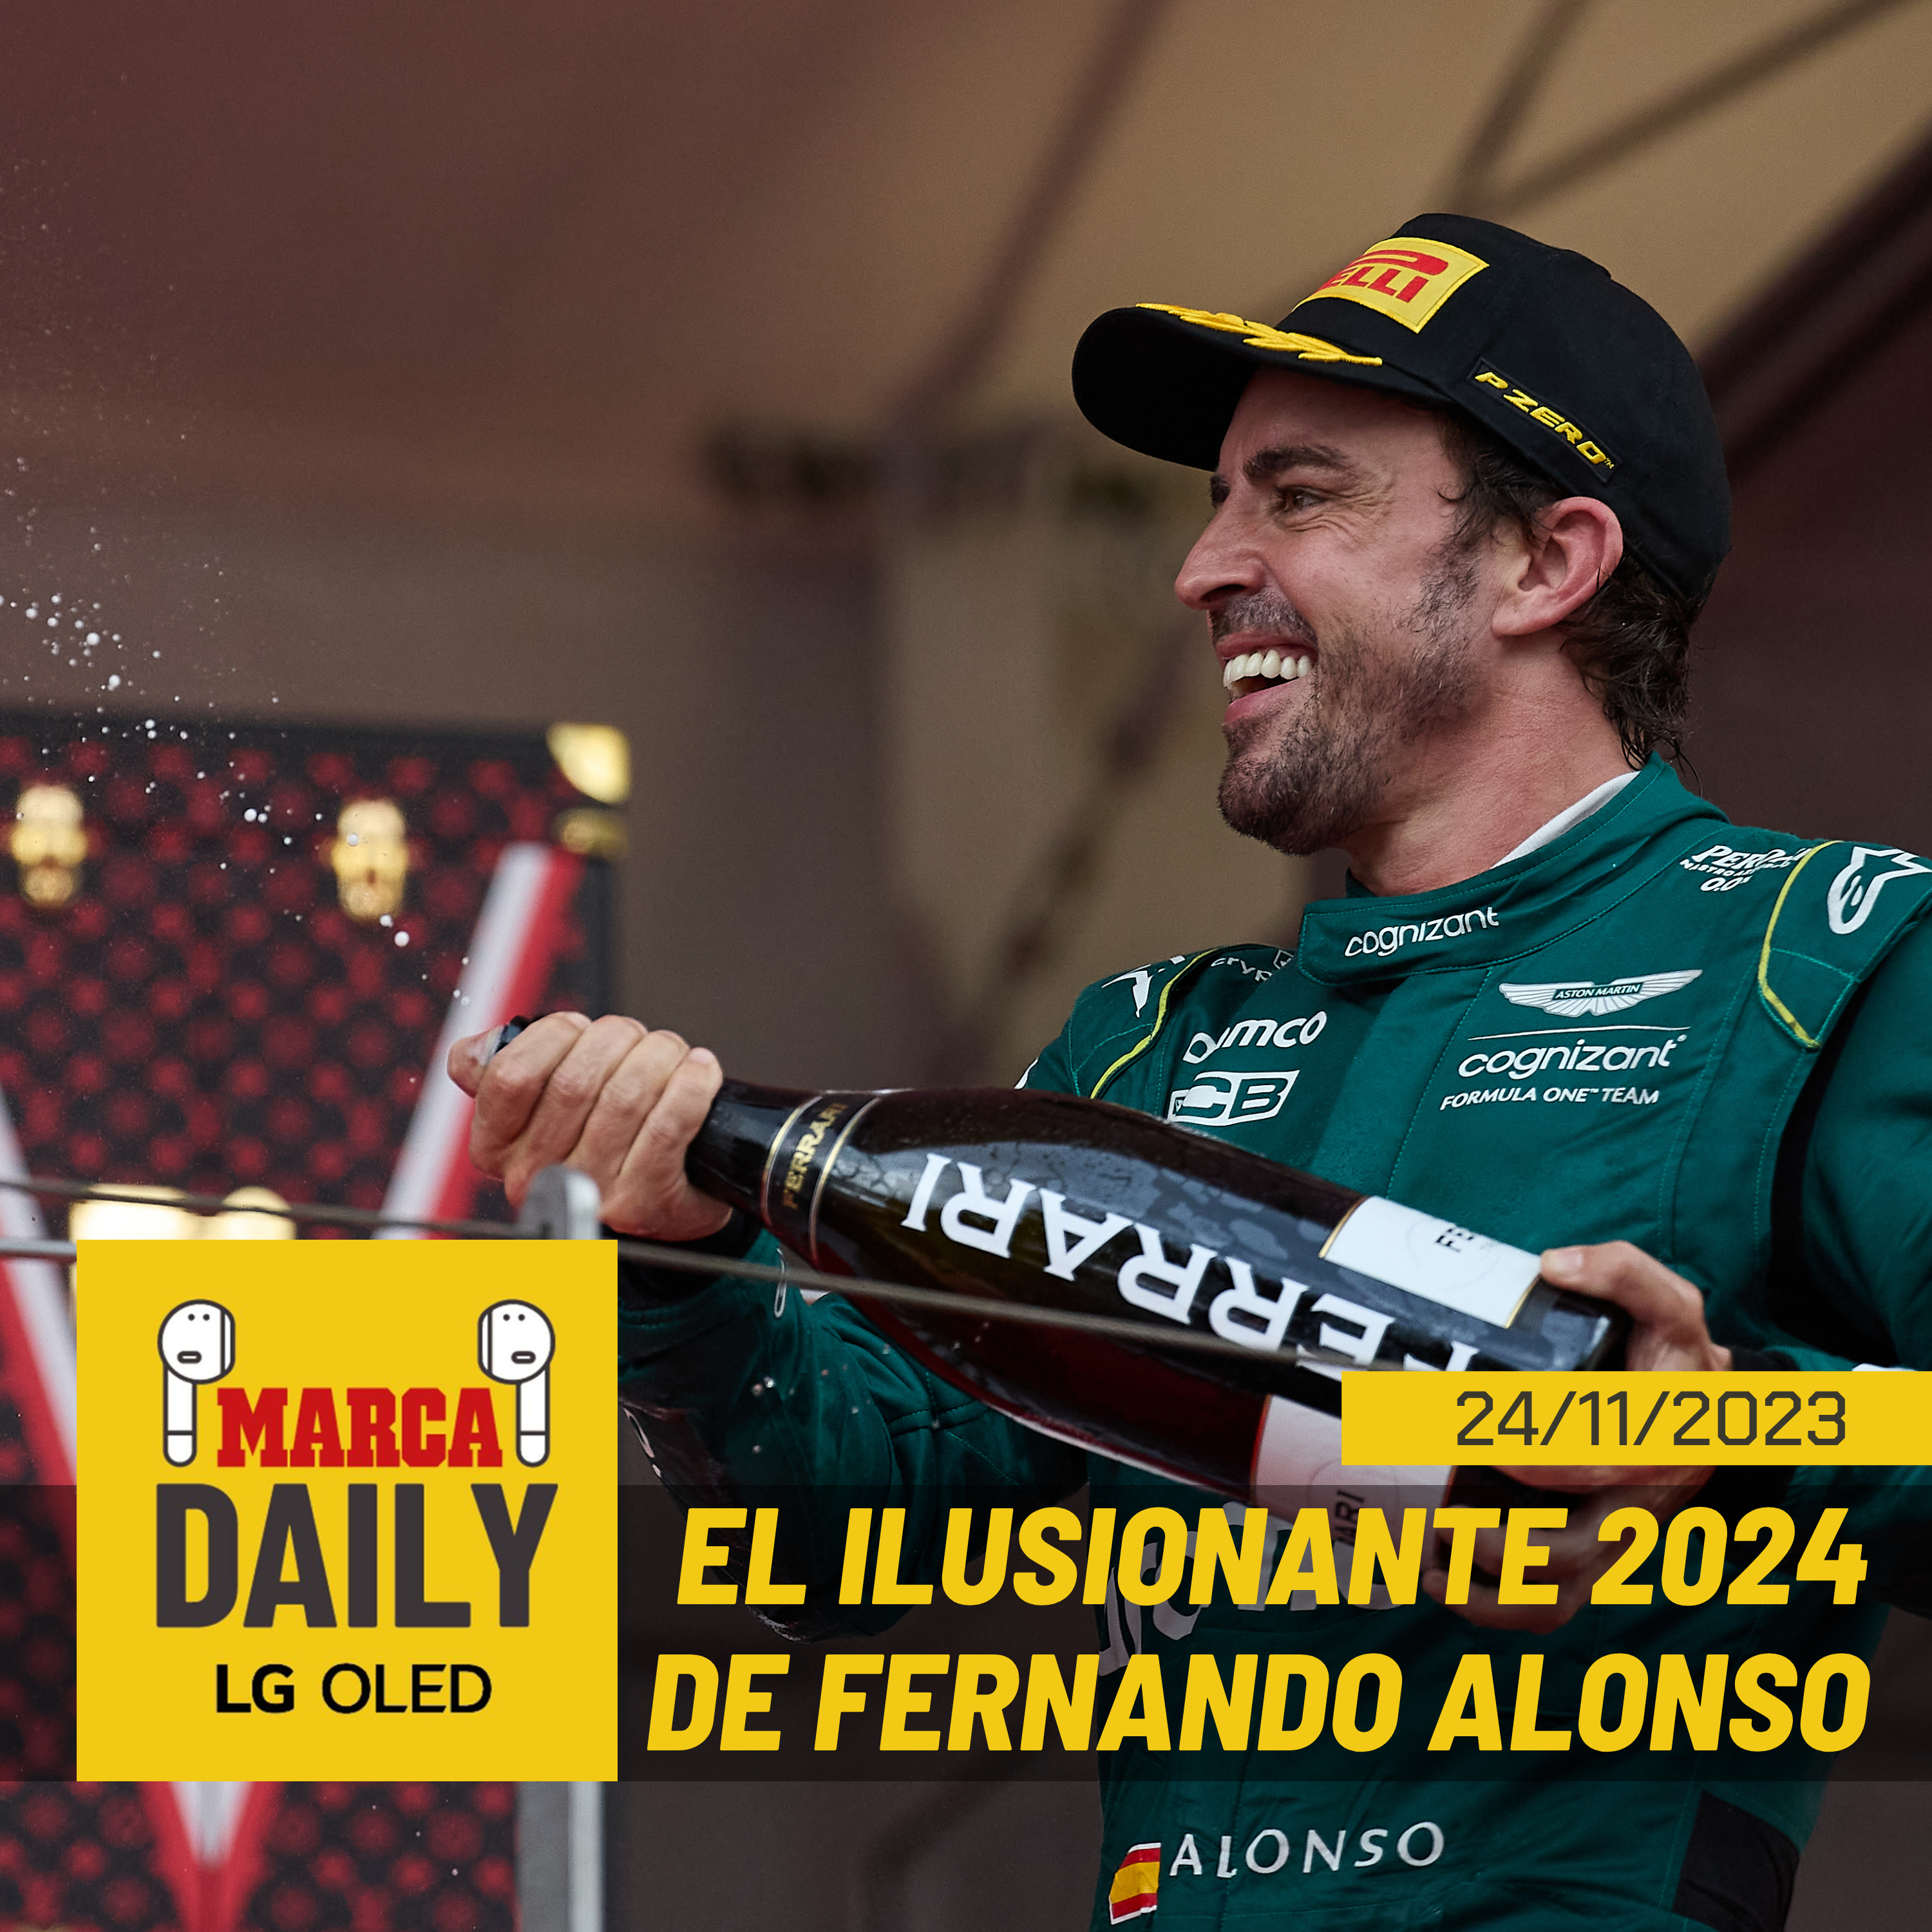 El ilusionante 2024 de Fernando Alonso